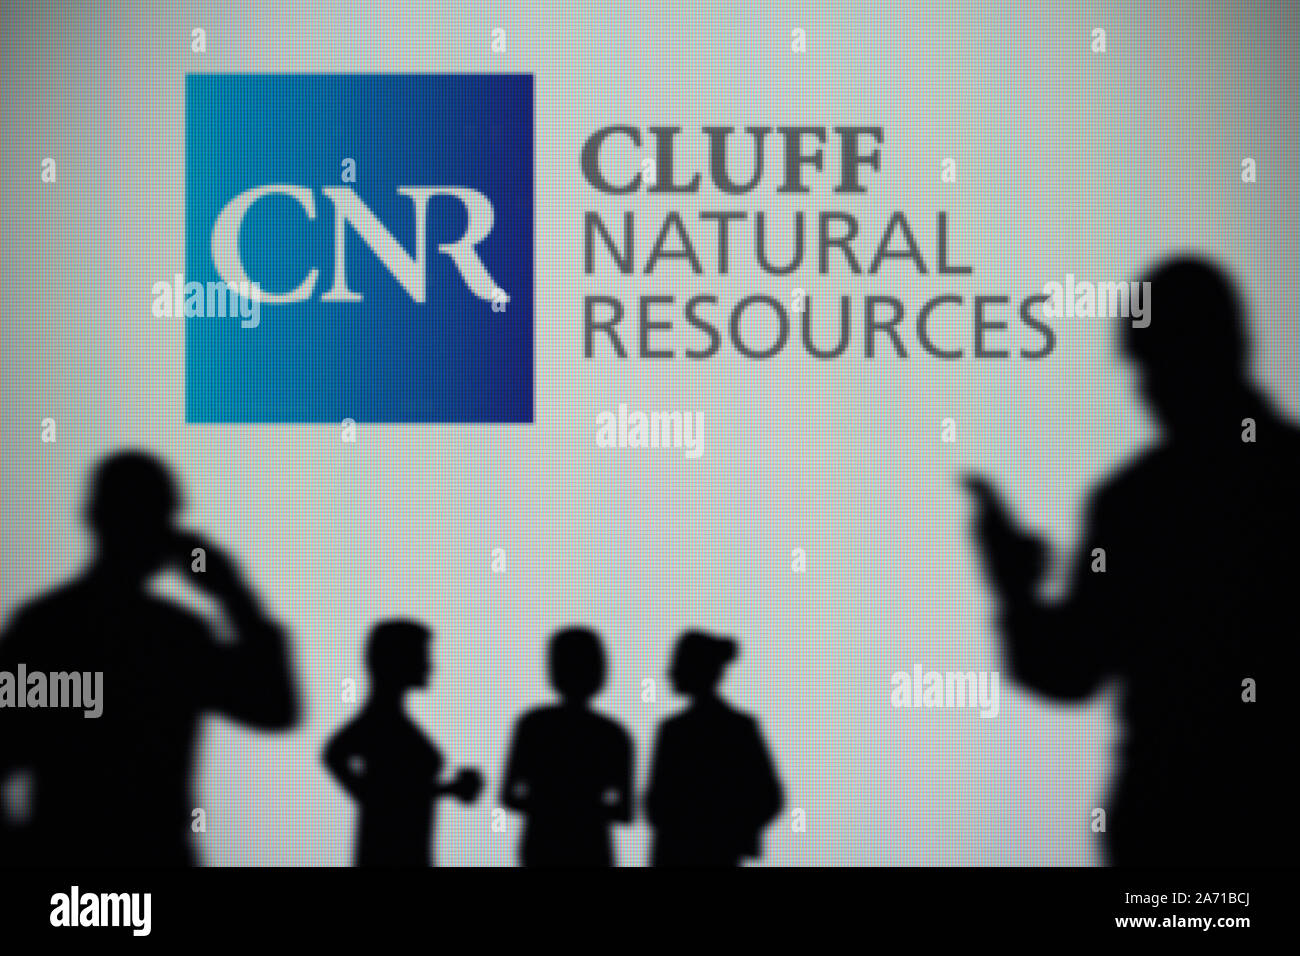 Il Cluff Risorse Naturali logo è visibile su uno schermo a LED in background mentre si profila una persona utilizza uno smartphone (solo uso editoriale) Foto Stock